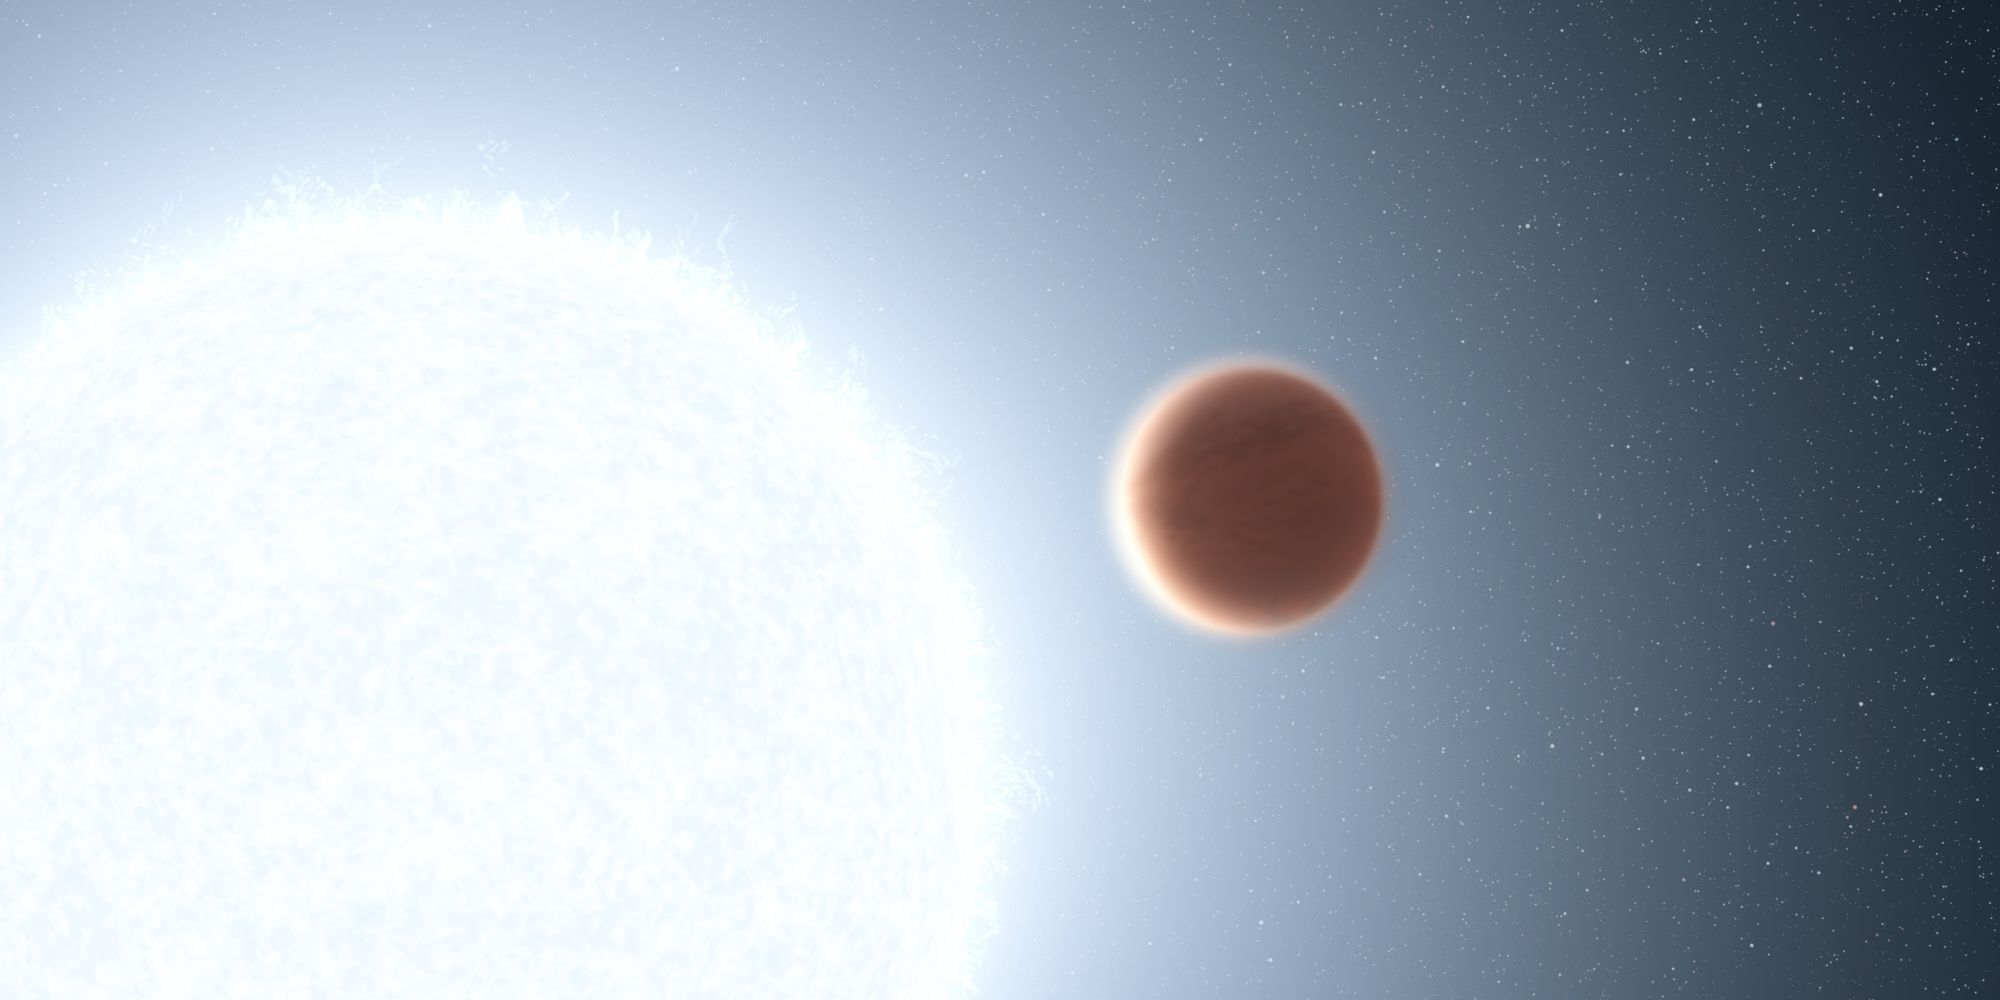 Hubble descubrió un planeta abrasador que es 3 veces más caliente que Venus